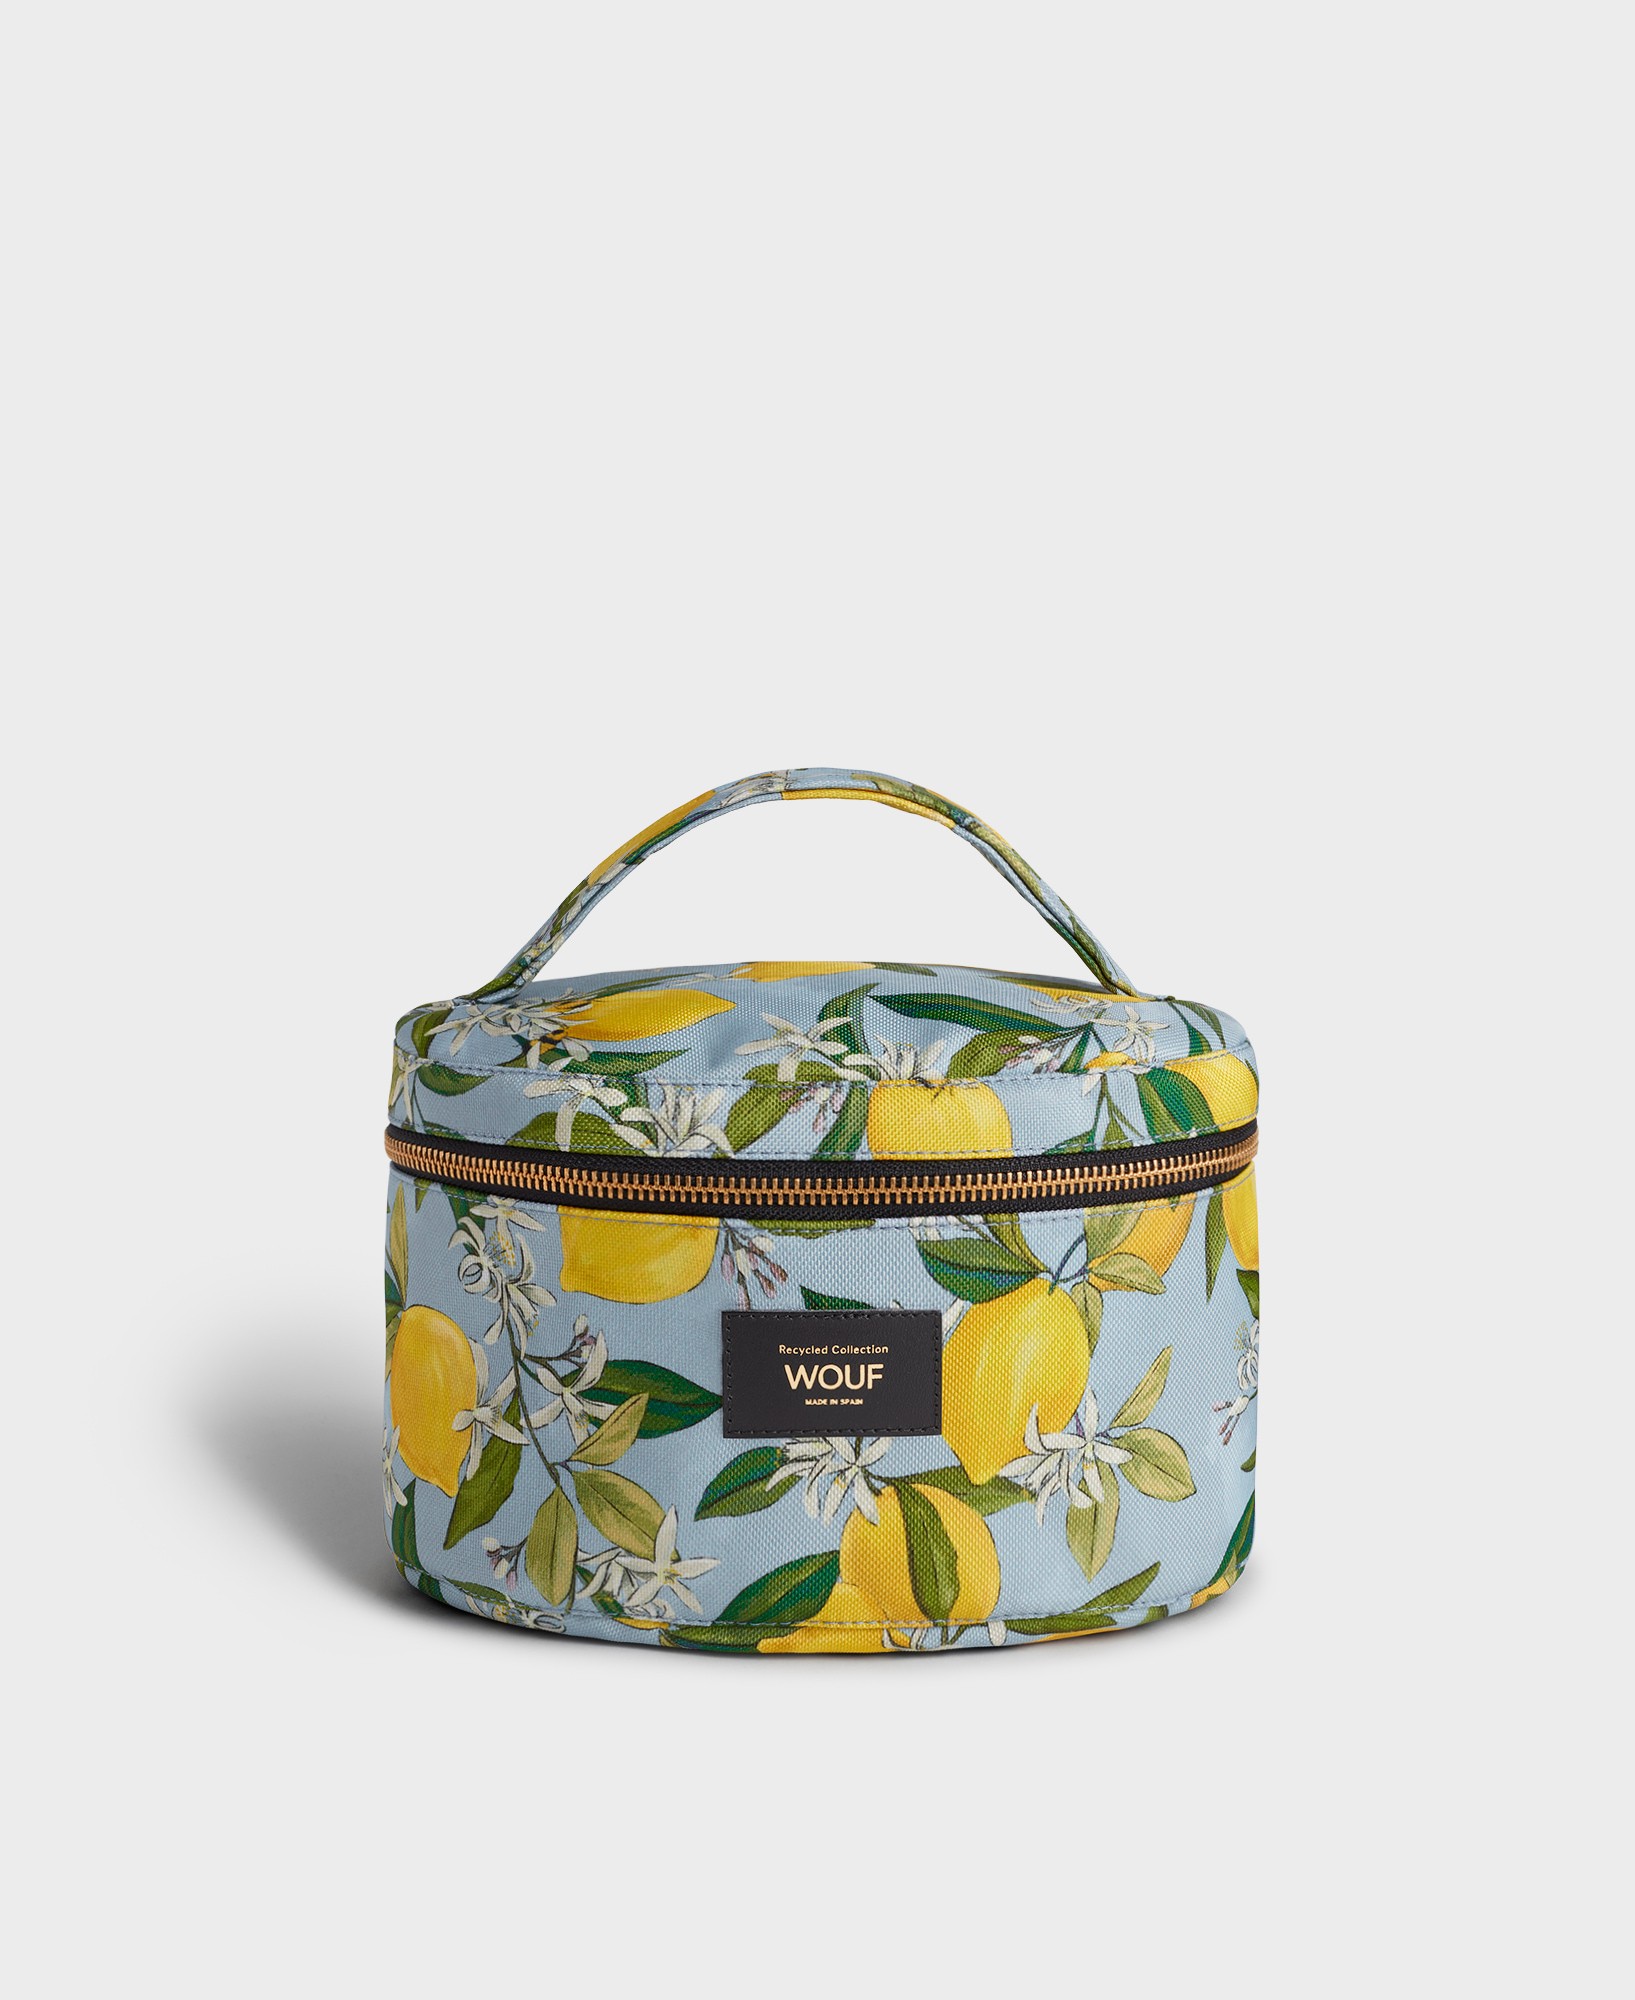 Wouf Capri Vanity Bag